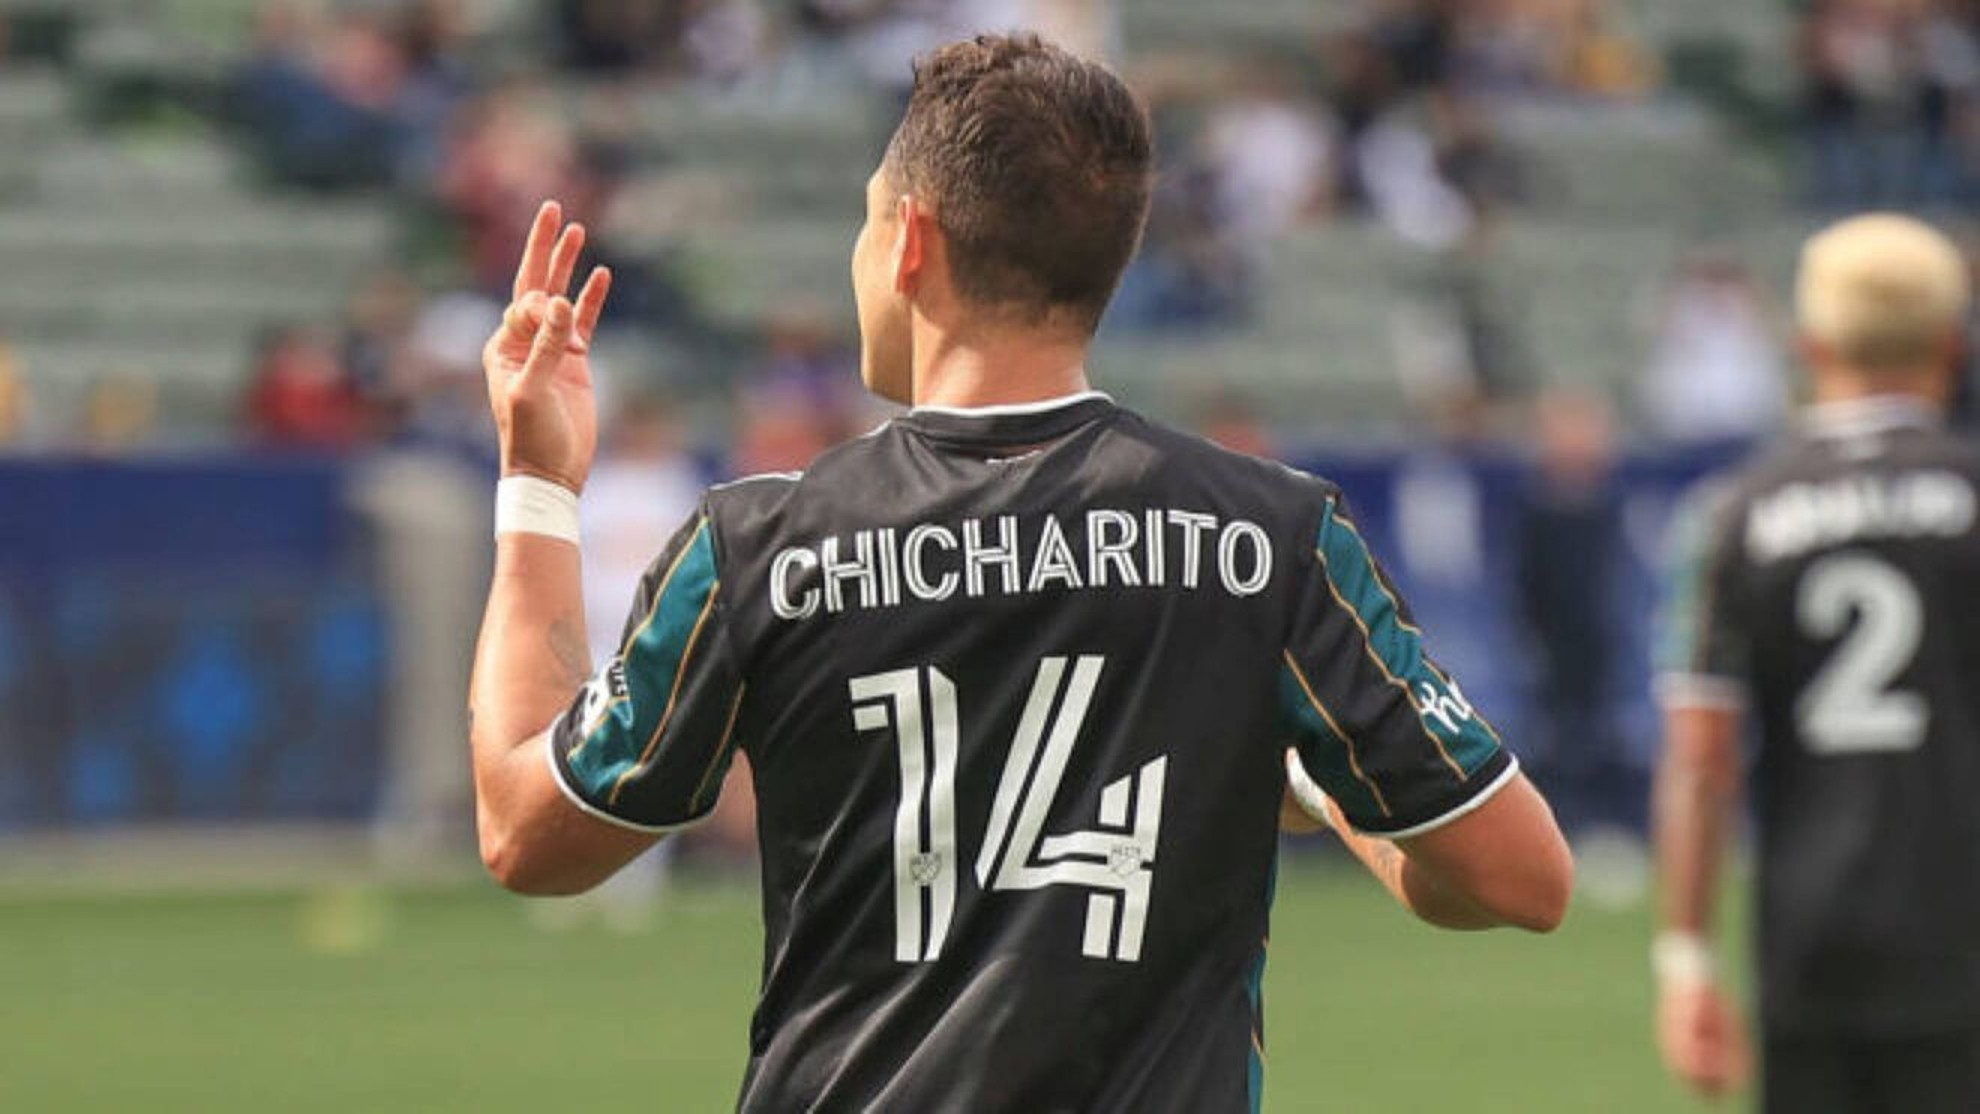 Chicharito anotó dos goles más para igualar sus mejores registros en la MLS